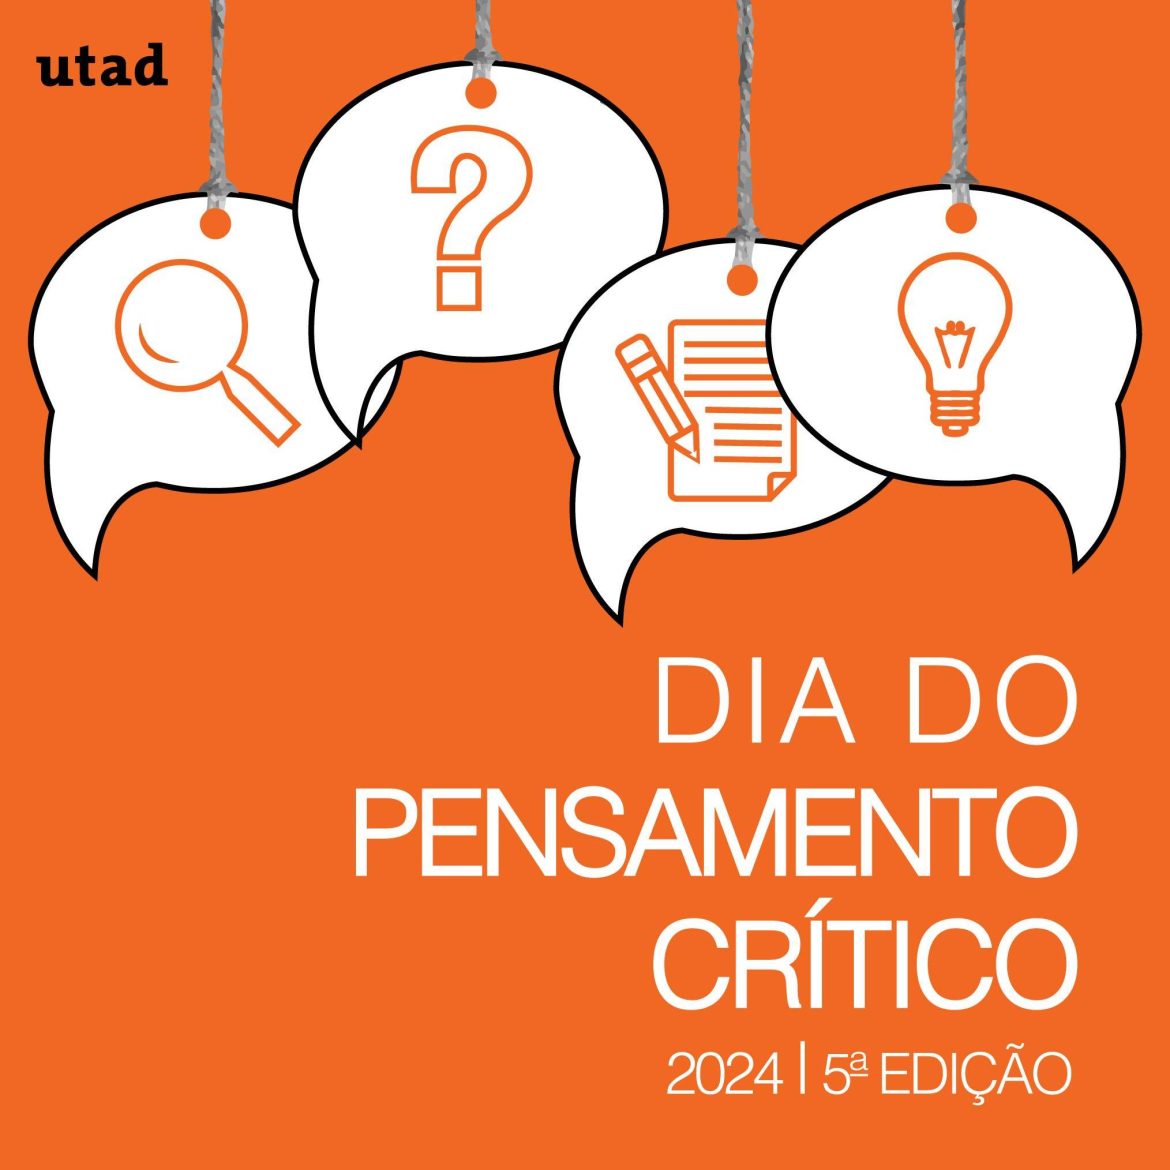 Mais uma edição do Dia do Pensamento Crítico promovida pela UTAD